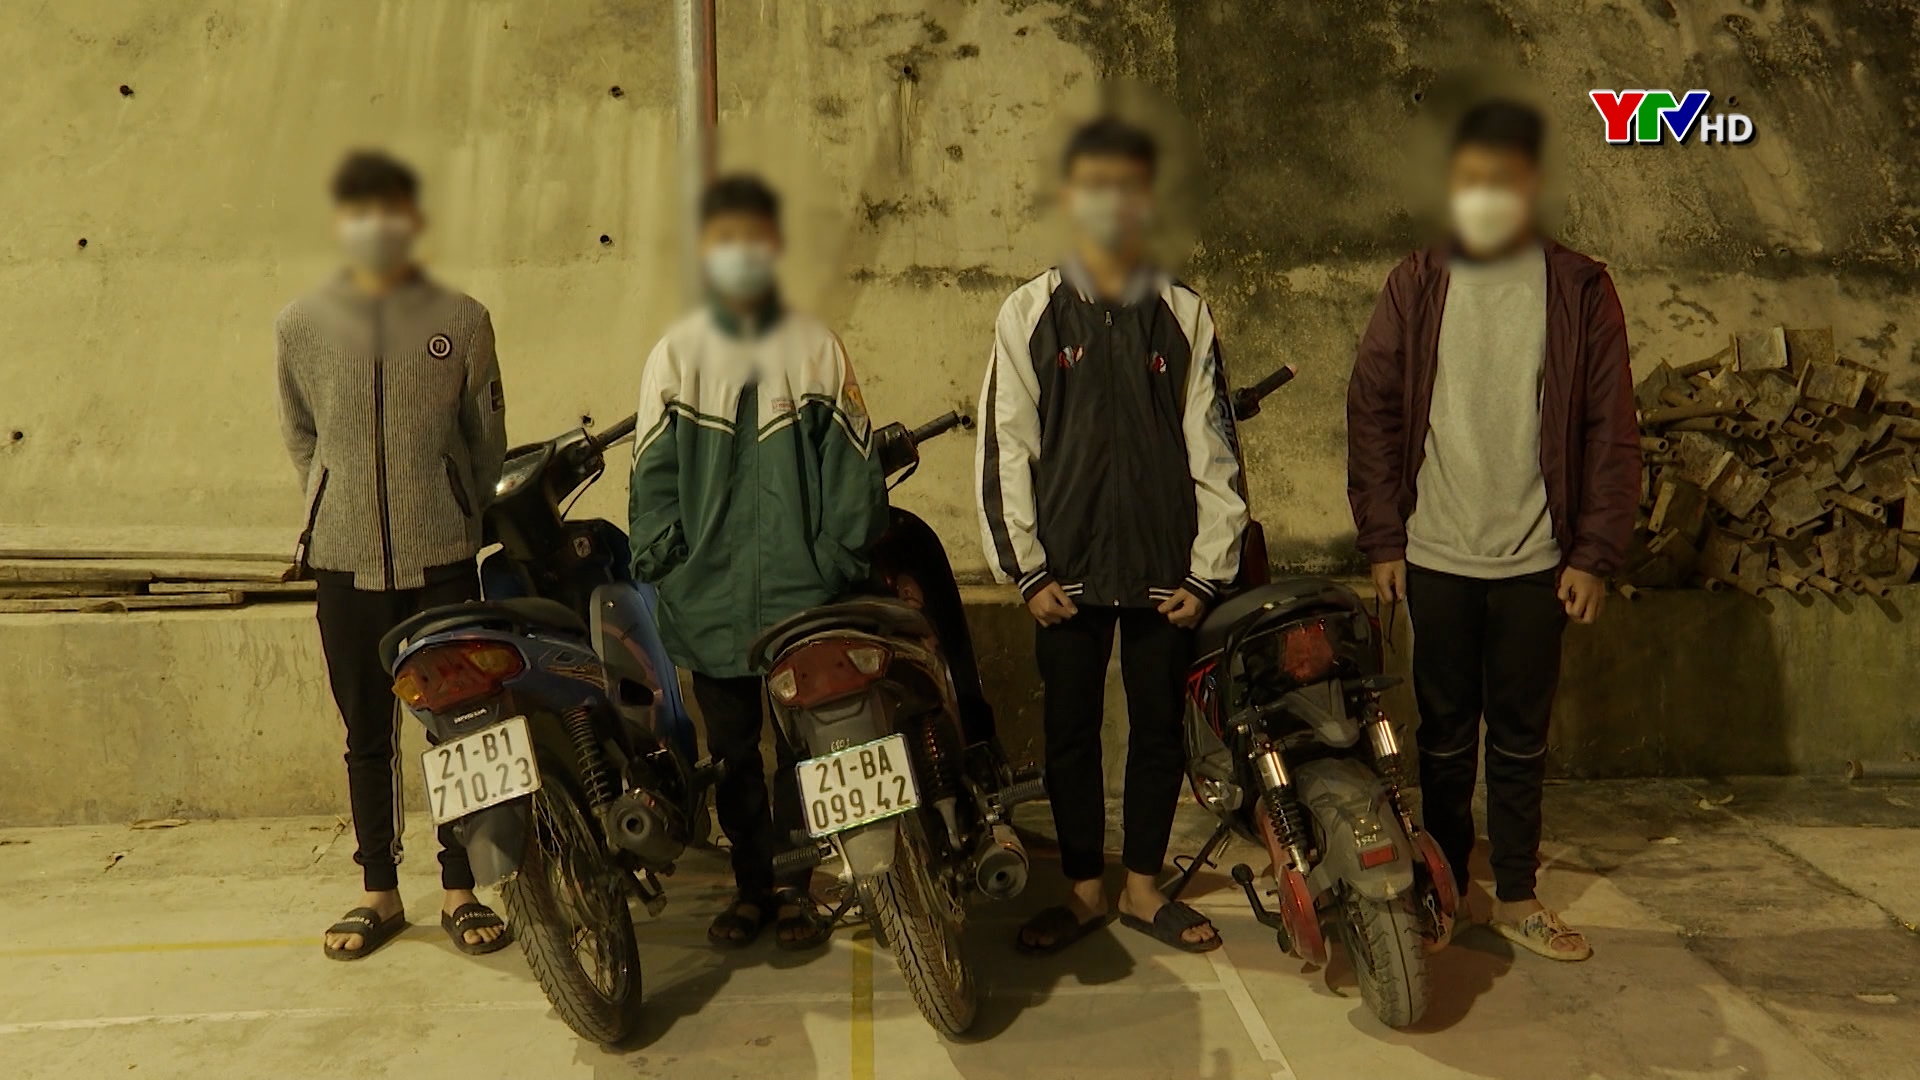 Triệu tập nhóm thiếu niên về hành vi cố ý làm hư hỏng xe ô tô của nhiều hộ dân tại TP Yên Bái